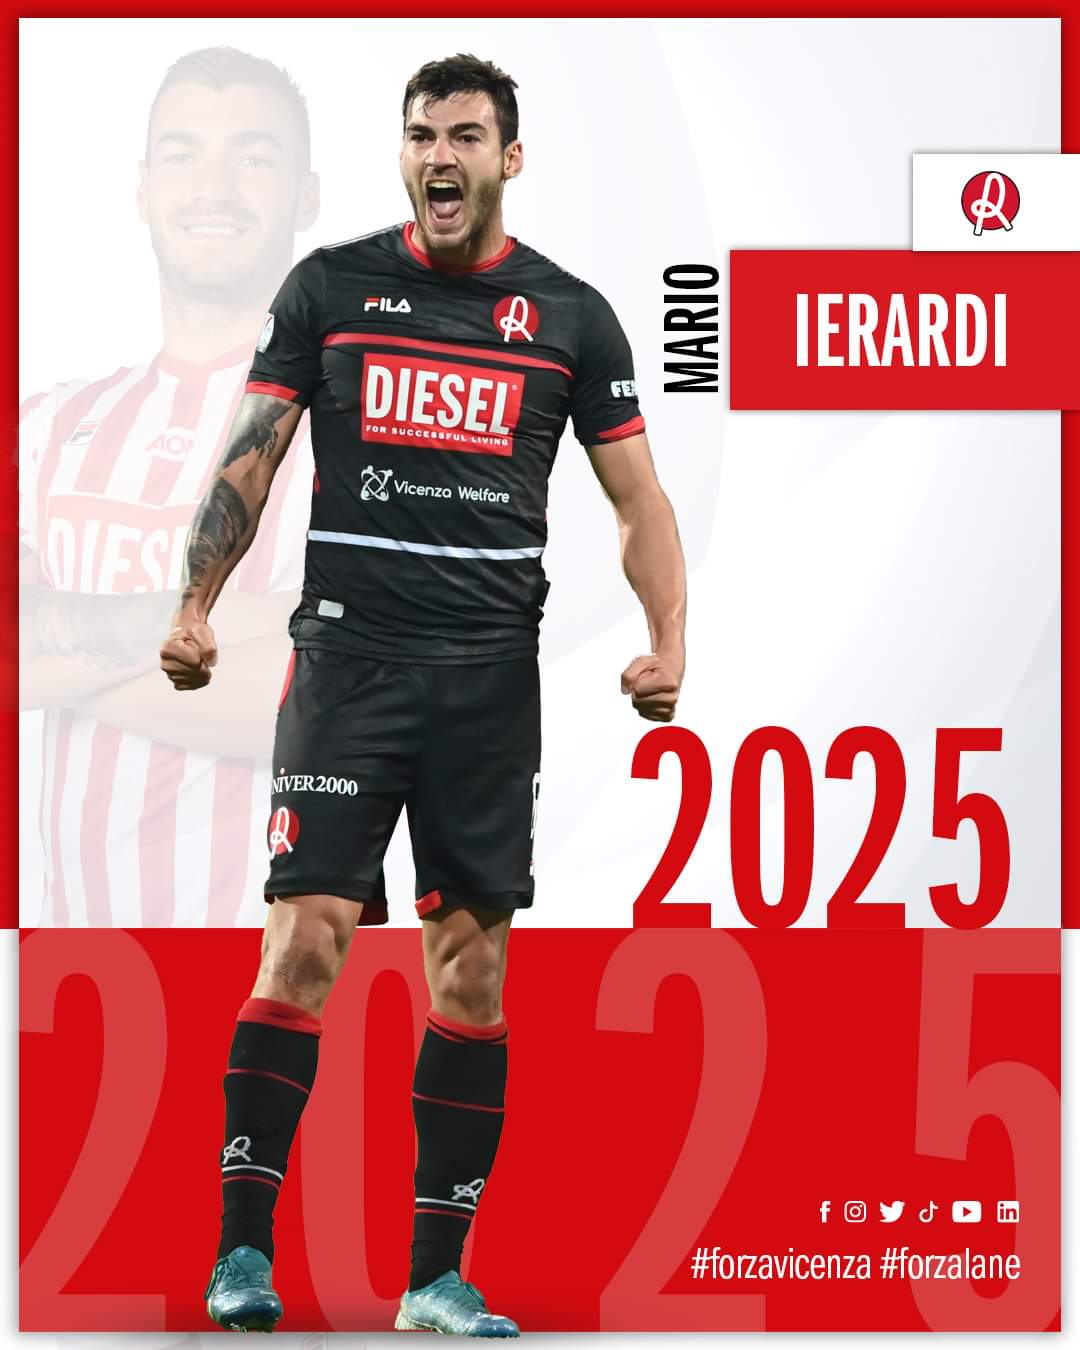 Ufficiale: Mario Ierardi rinnova fino al 2025